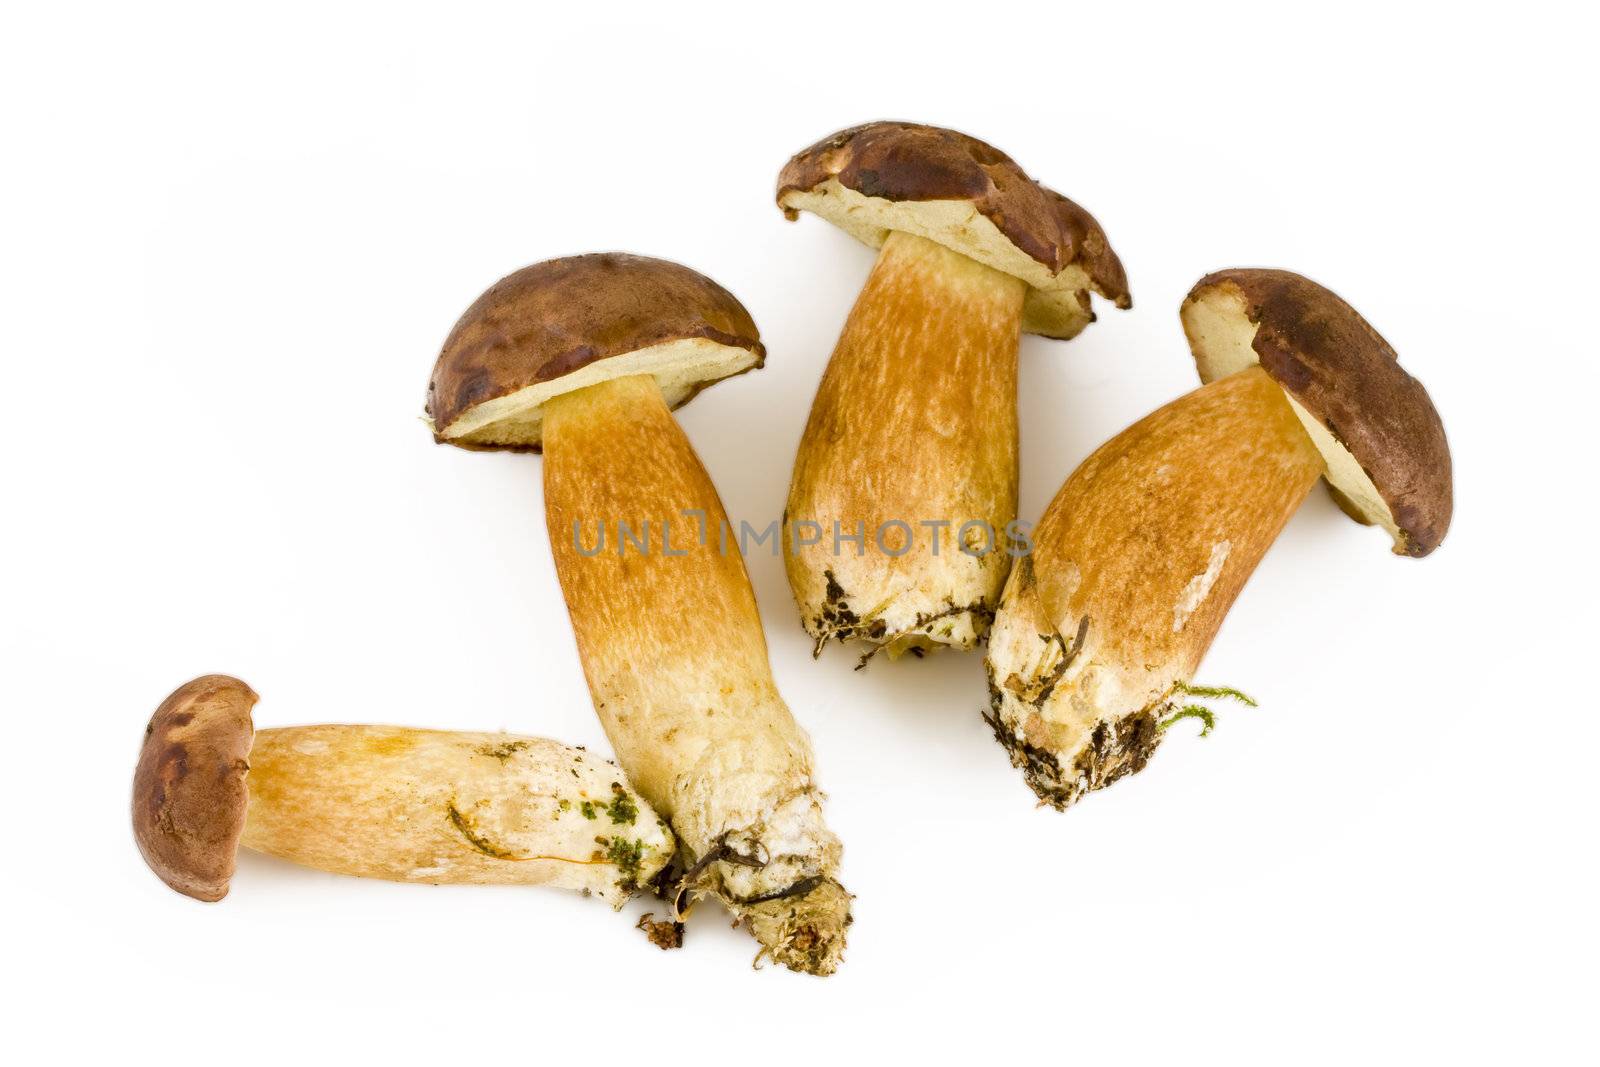 Four fresh mushroom by Gbuglok